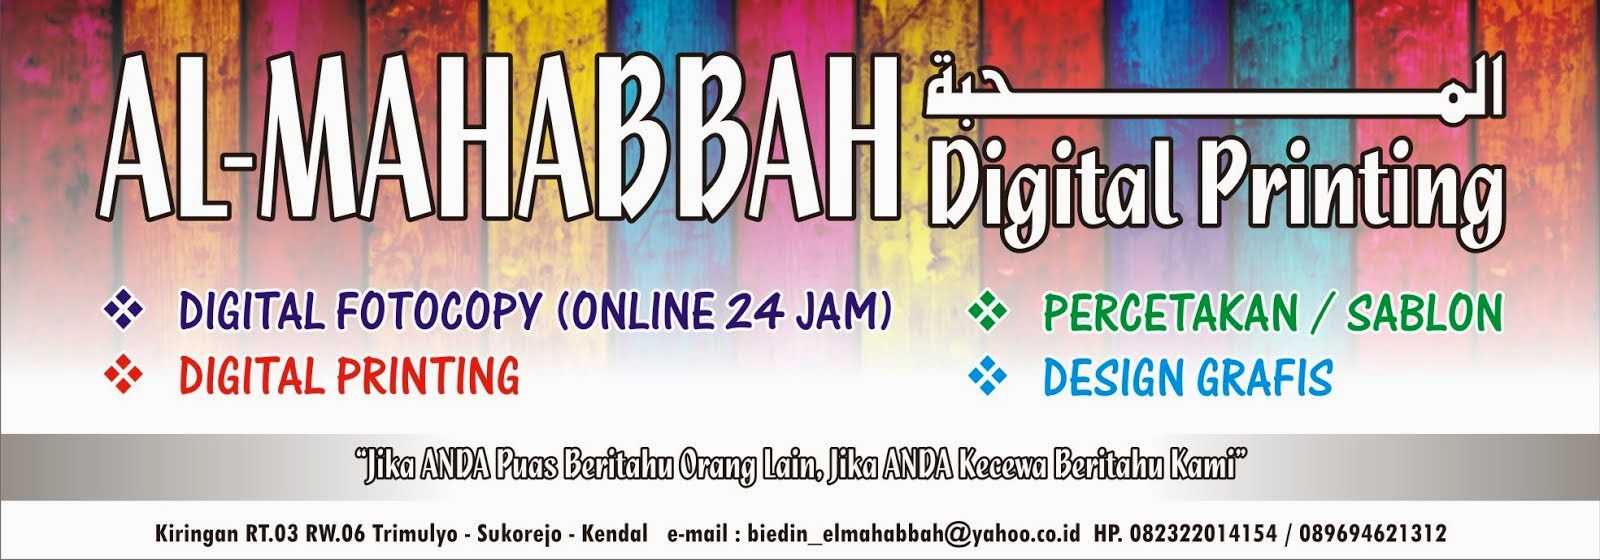 AL-MAHABBAH Digital Printing